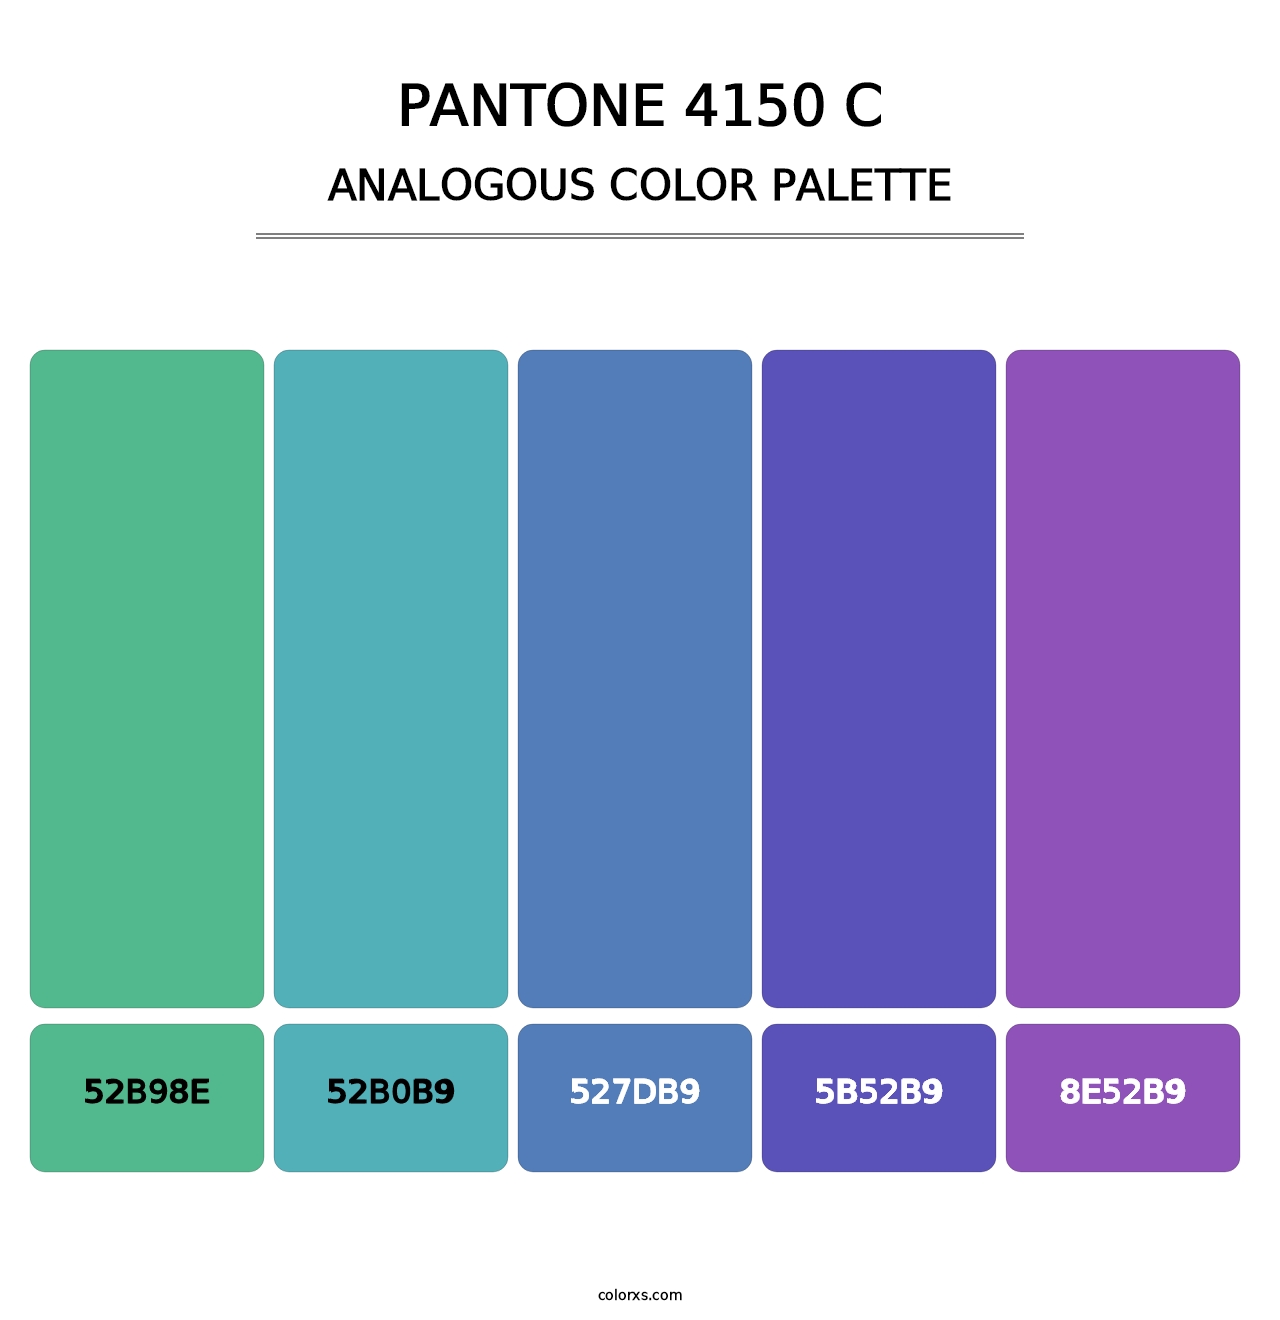 PANTONE 4150 C - Analogous Color Palette